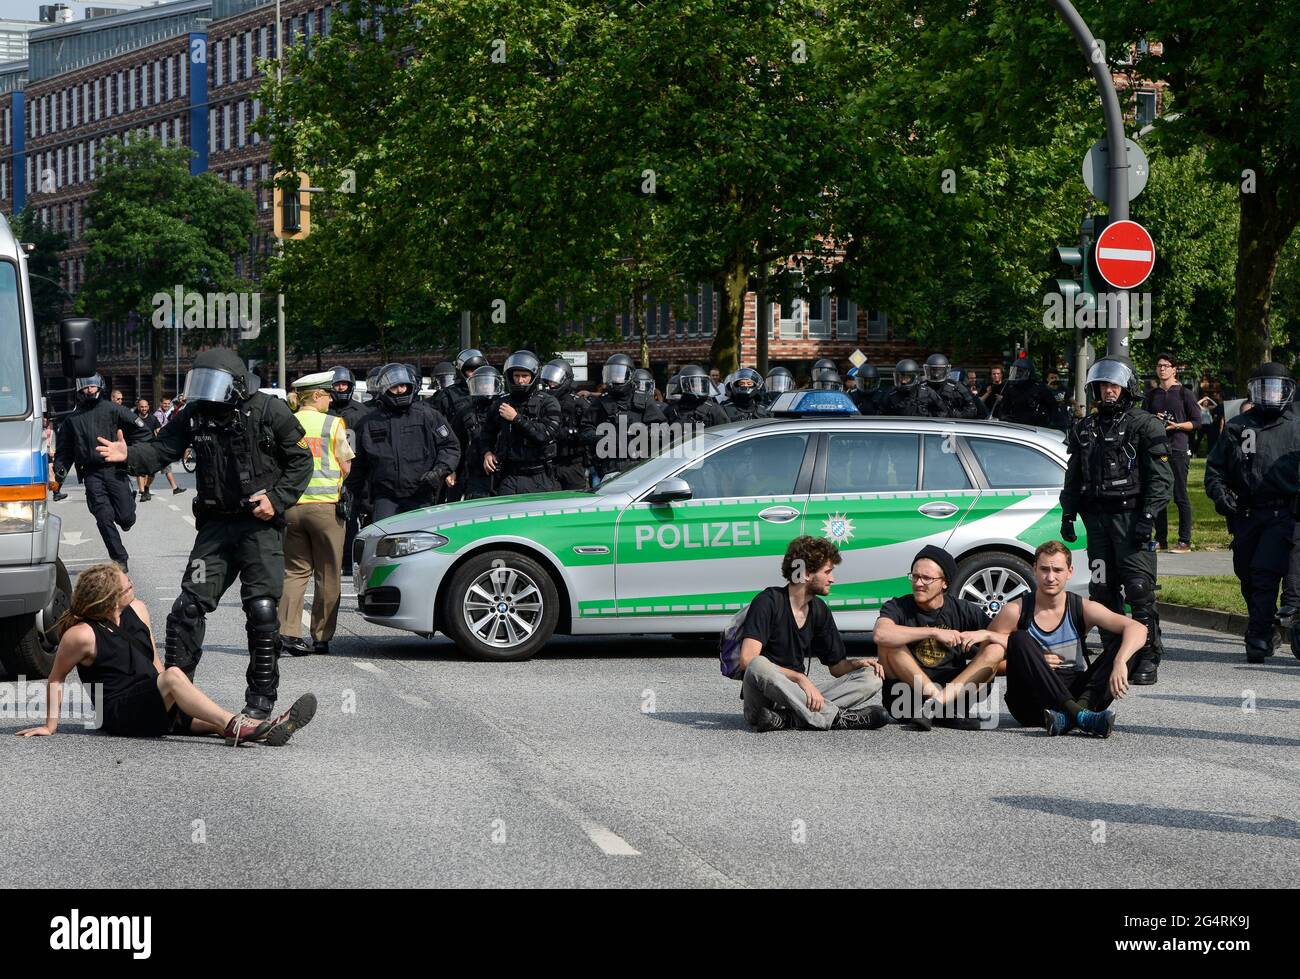 DEUTSCHLAND, Hamburg, Proteste gegen den den G20 Gipfel, Millerntor, Polizei raeumt Sitzblockaden in der Ost West Strasse Stock Photo